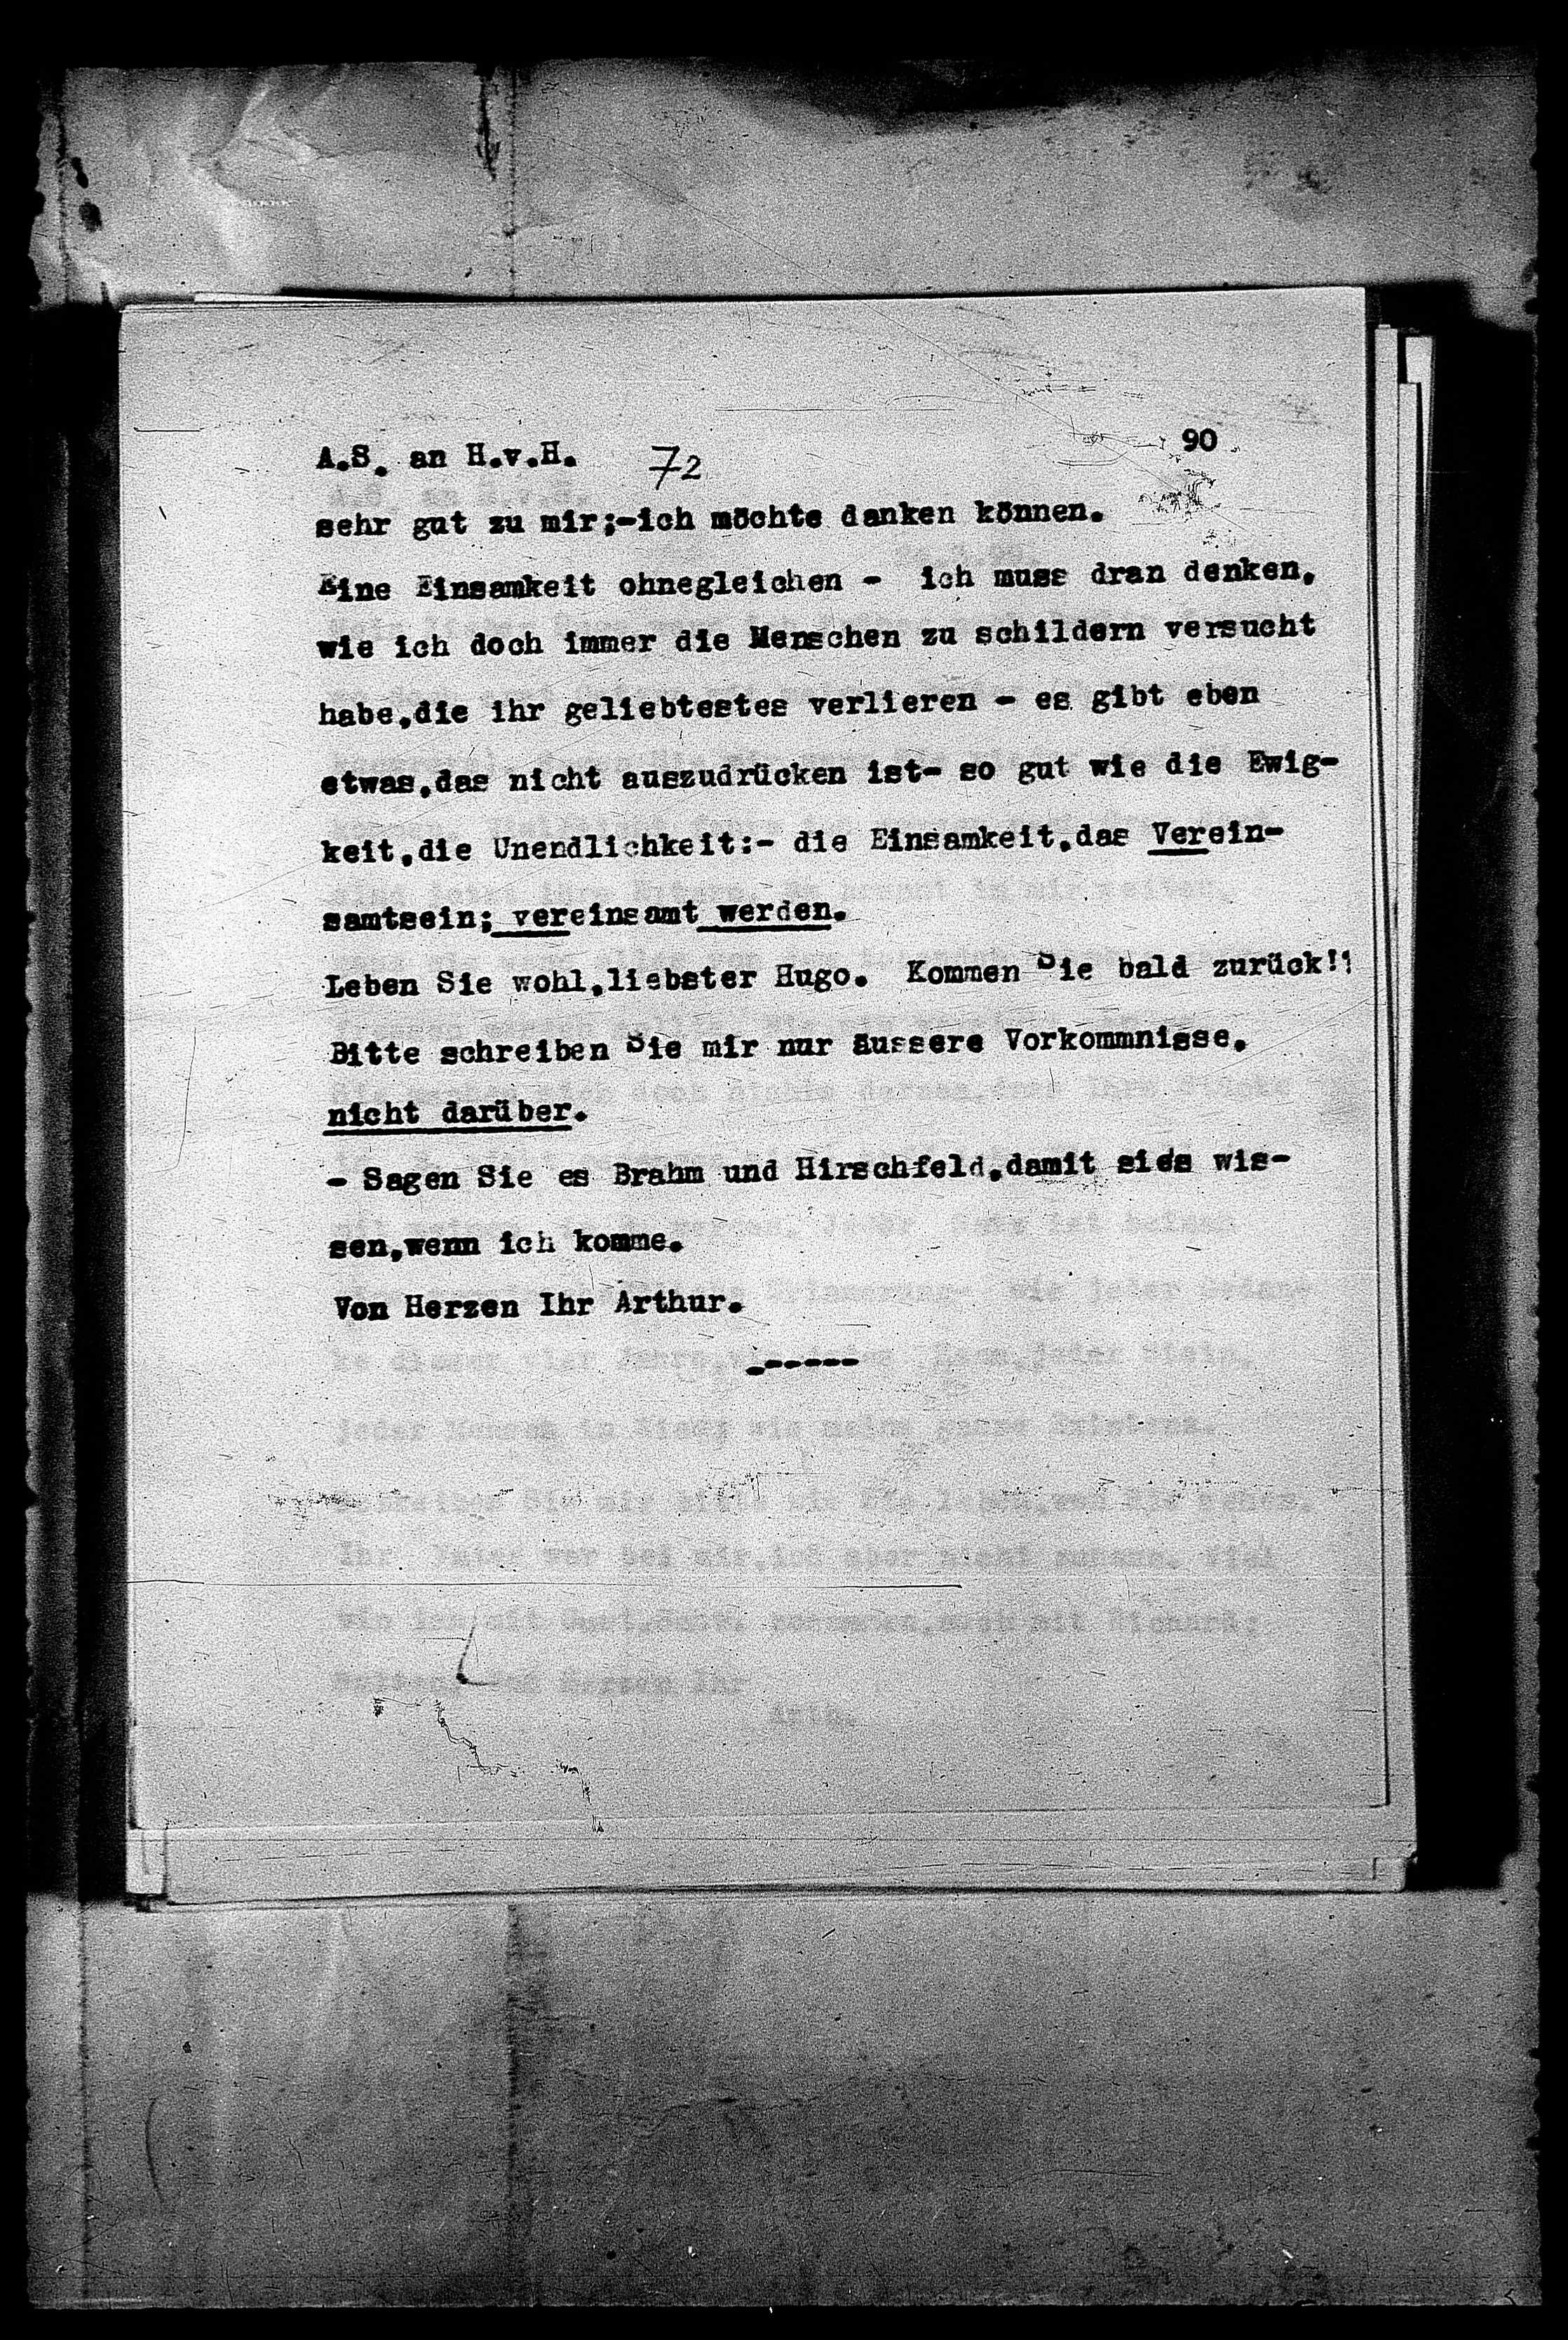 Vorschaubild für Hofmannsthal, Hugo von_AS an HvH Abschrift, HvH an AS, Originale (Mikrofilm 38), Seite 94